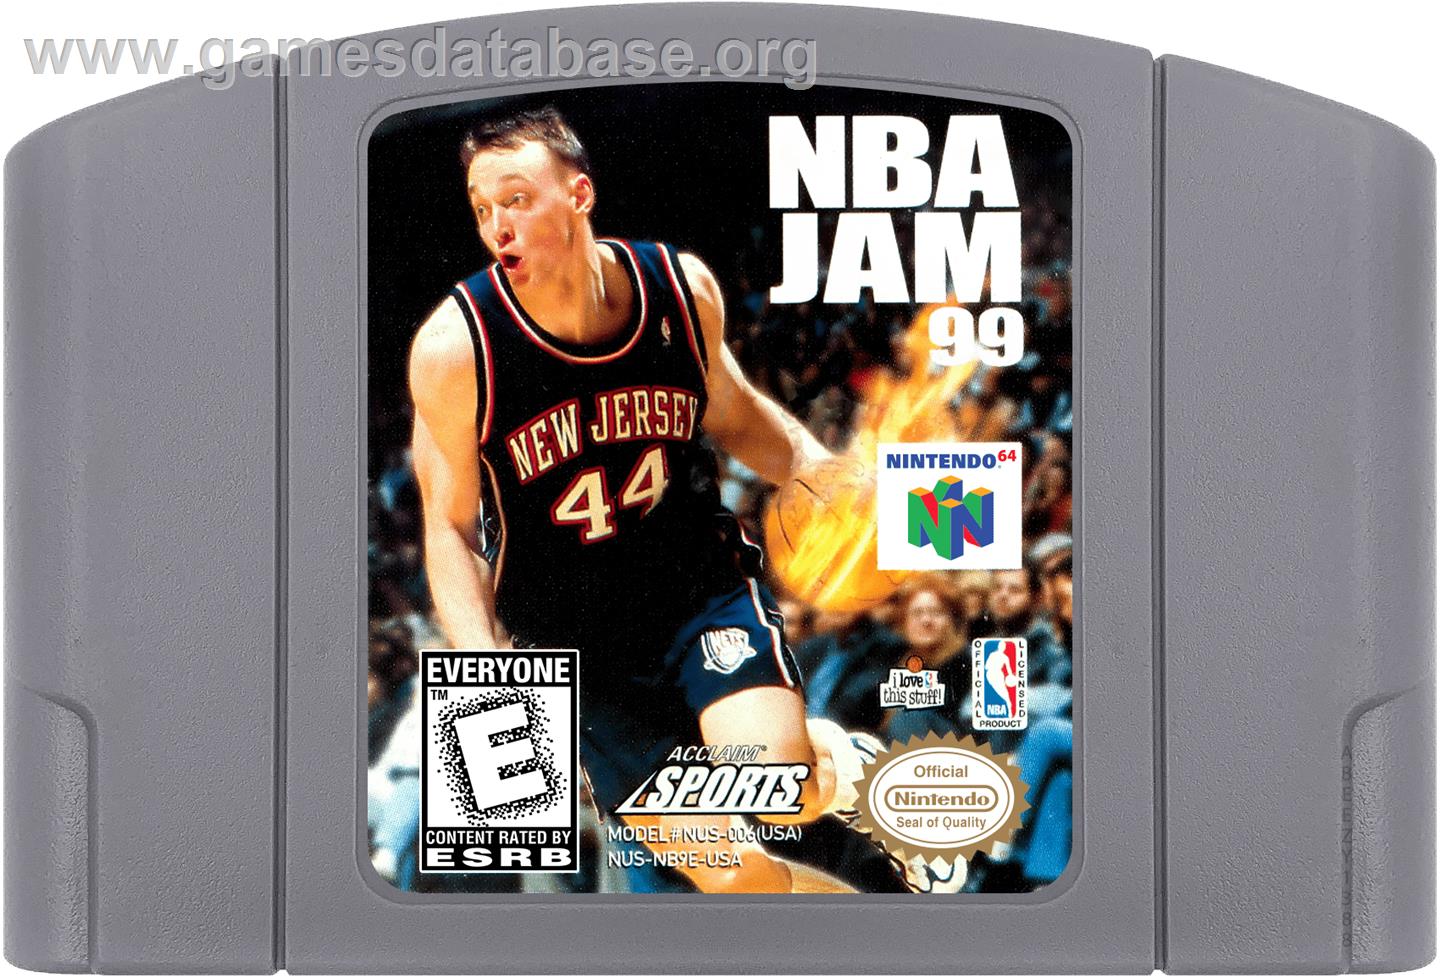 NBA Jam 99 - Nintendo N64 - Artwork - Cartridge